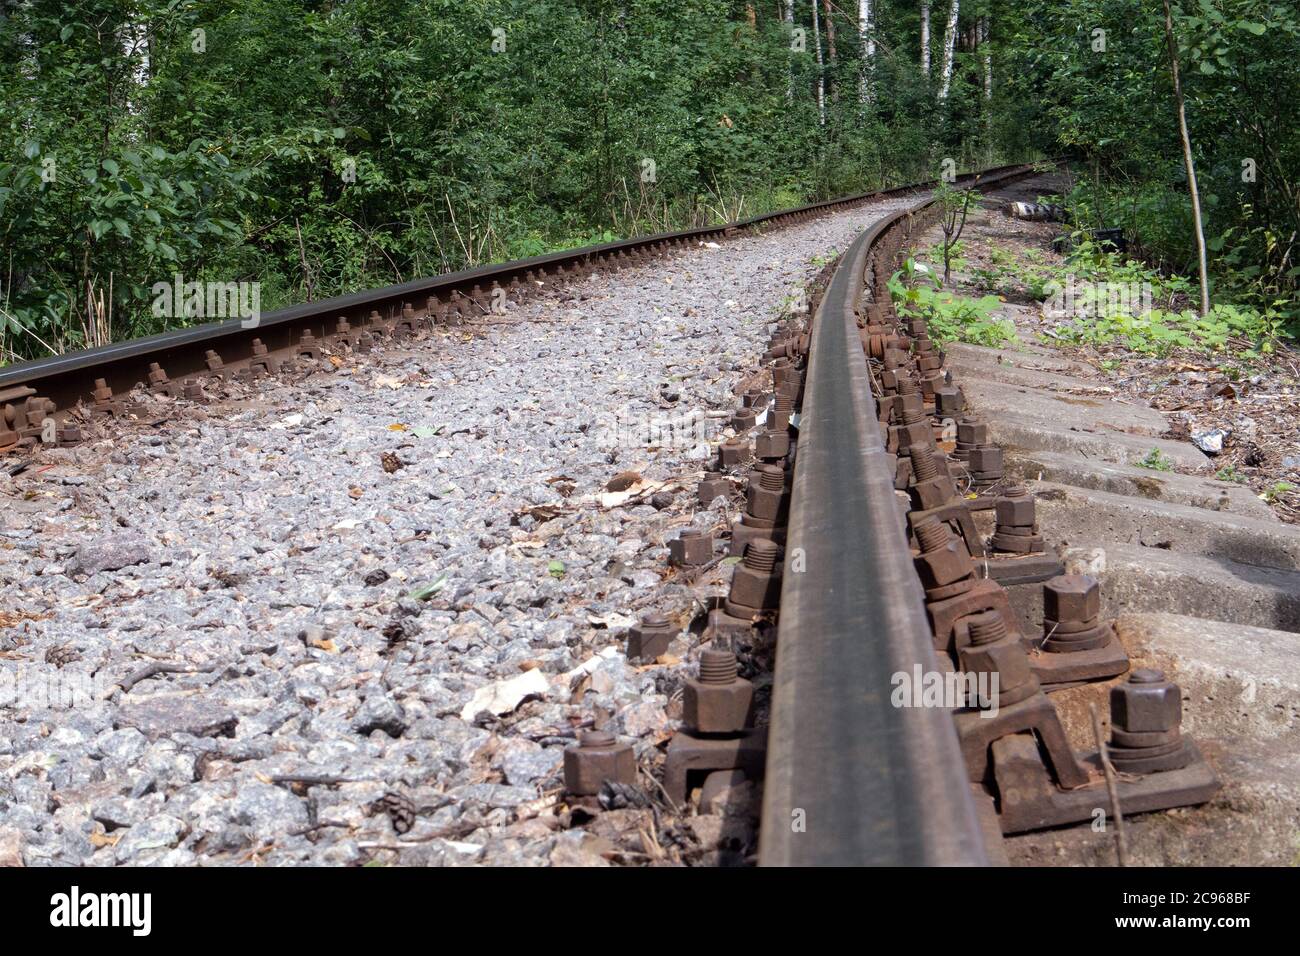 Ancienne voie de chemin de fer de forêt avec des rails rouillés allant dans la distance, ton sépia Banque D'Images